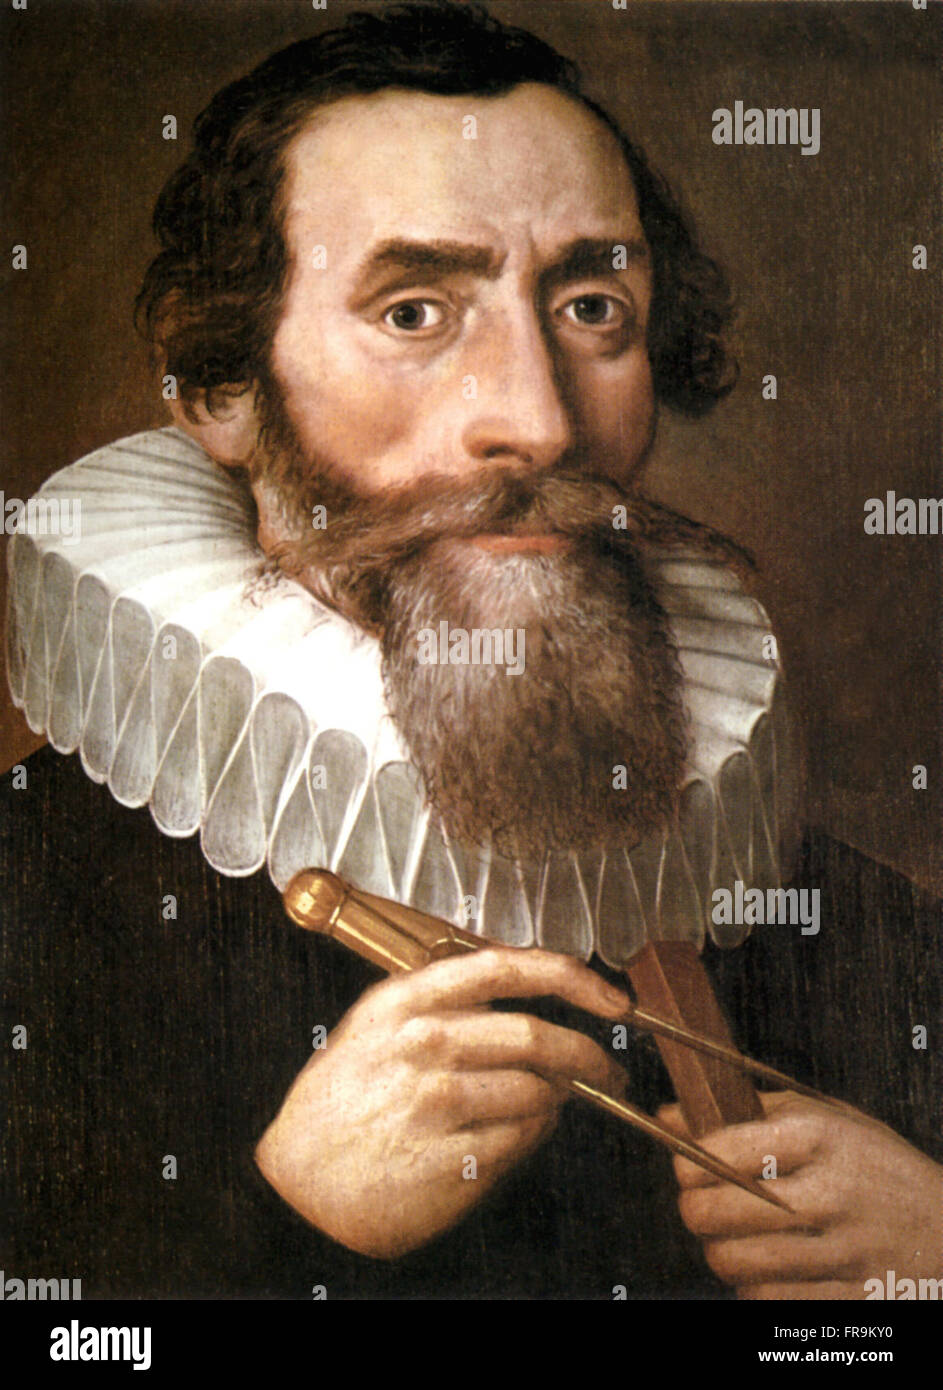 1610 Un portrait de Johannes Kepler par un artiste inconnu. Johannes Kepler ; Décembre 27, 1571 - Novembre 15, 1630) était un mathématicien, astronome et astrologue. Une figure clé de la révolution scientifique du 17e siècle Banque D'Images